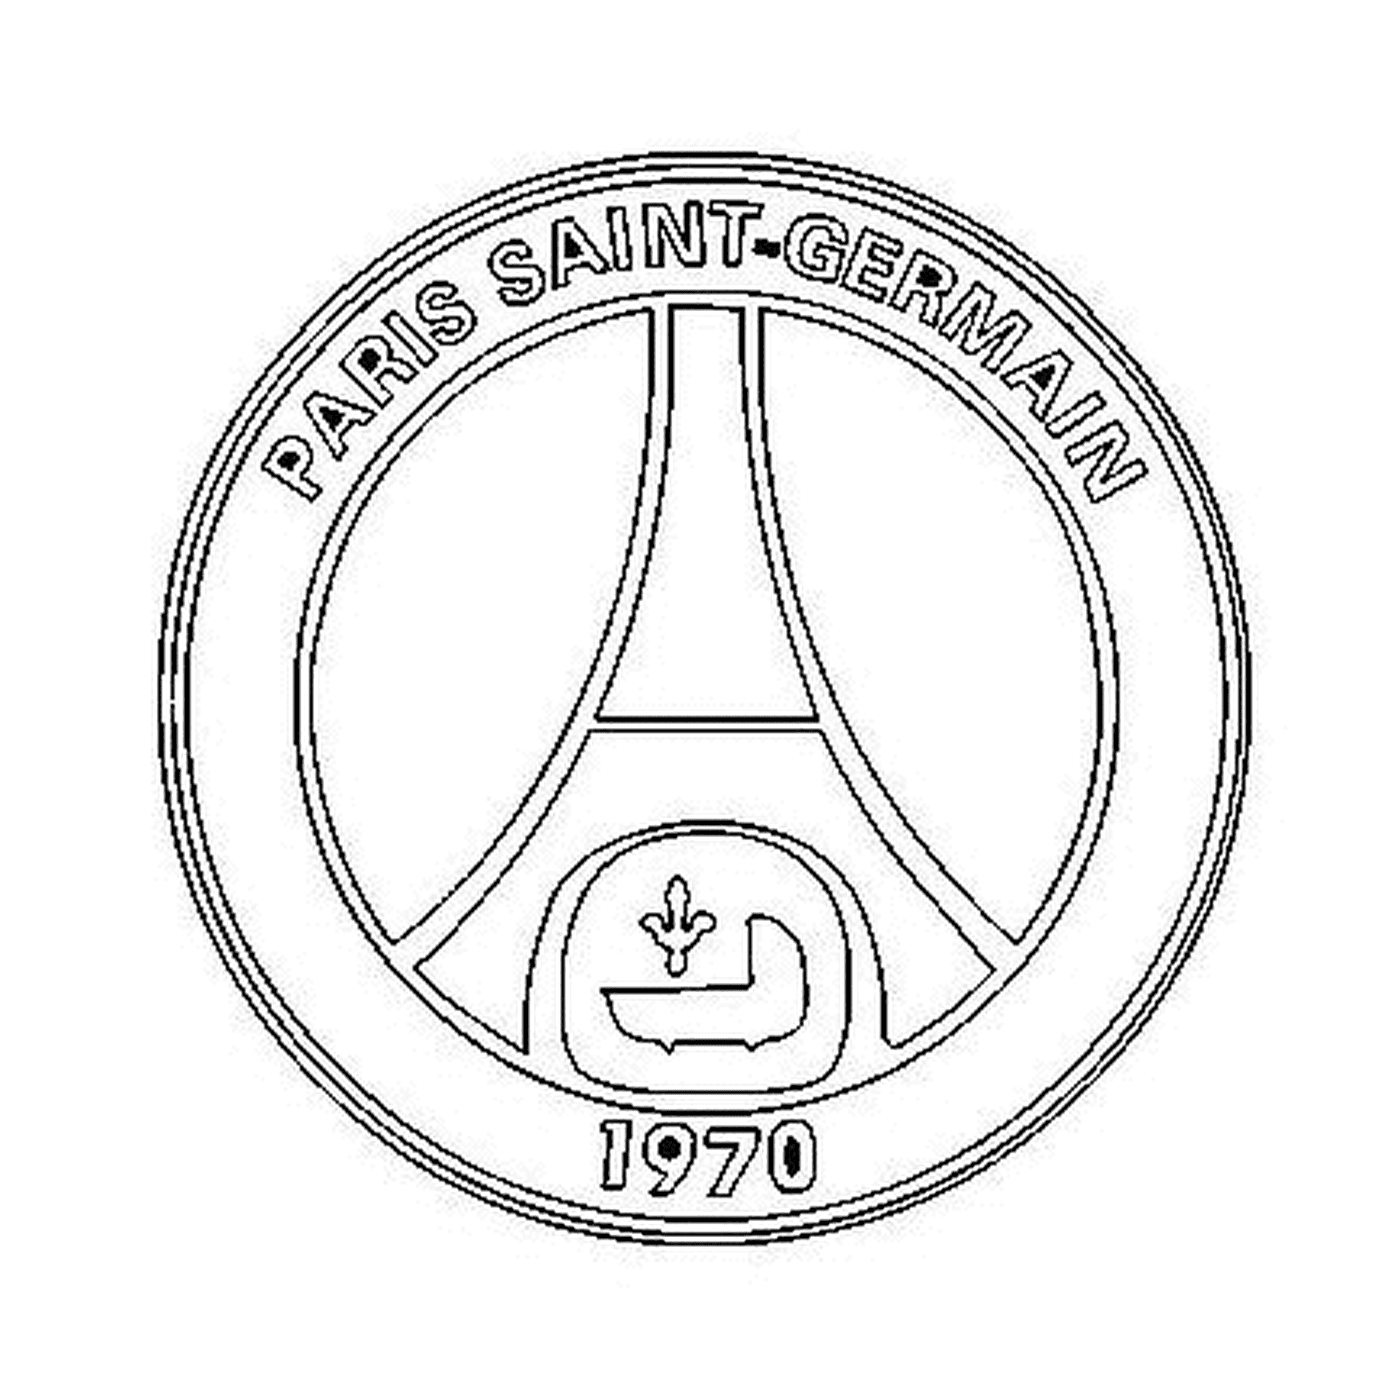  Логотип парижского сен-Жермена 